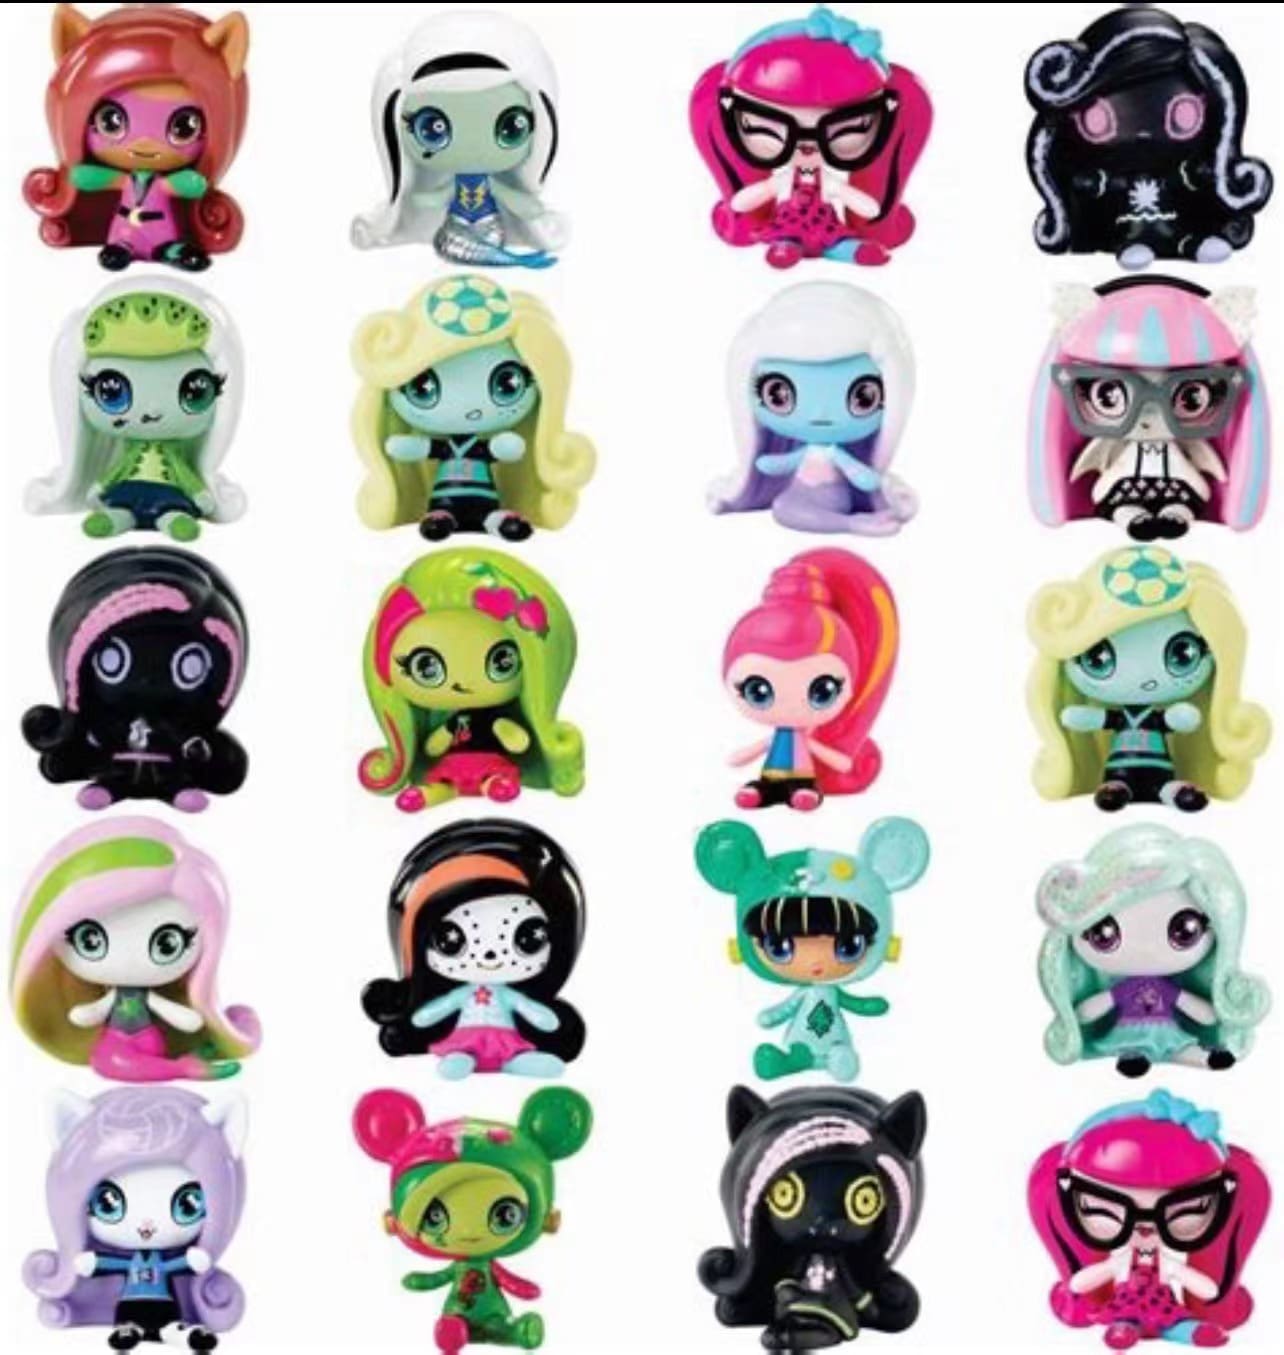 Mini Monster High Dolls Toy for Children Gift